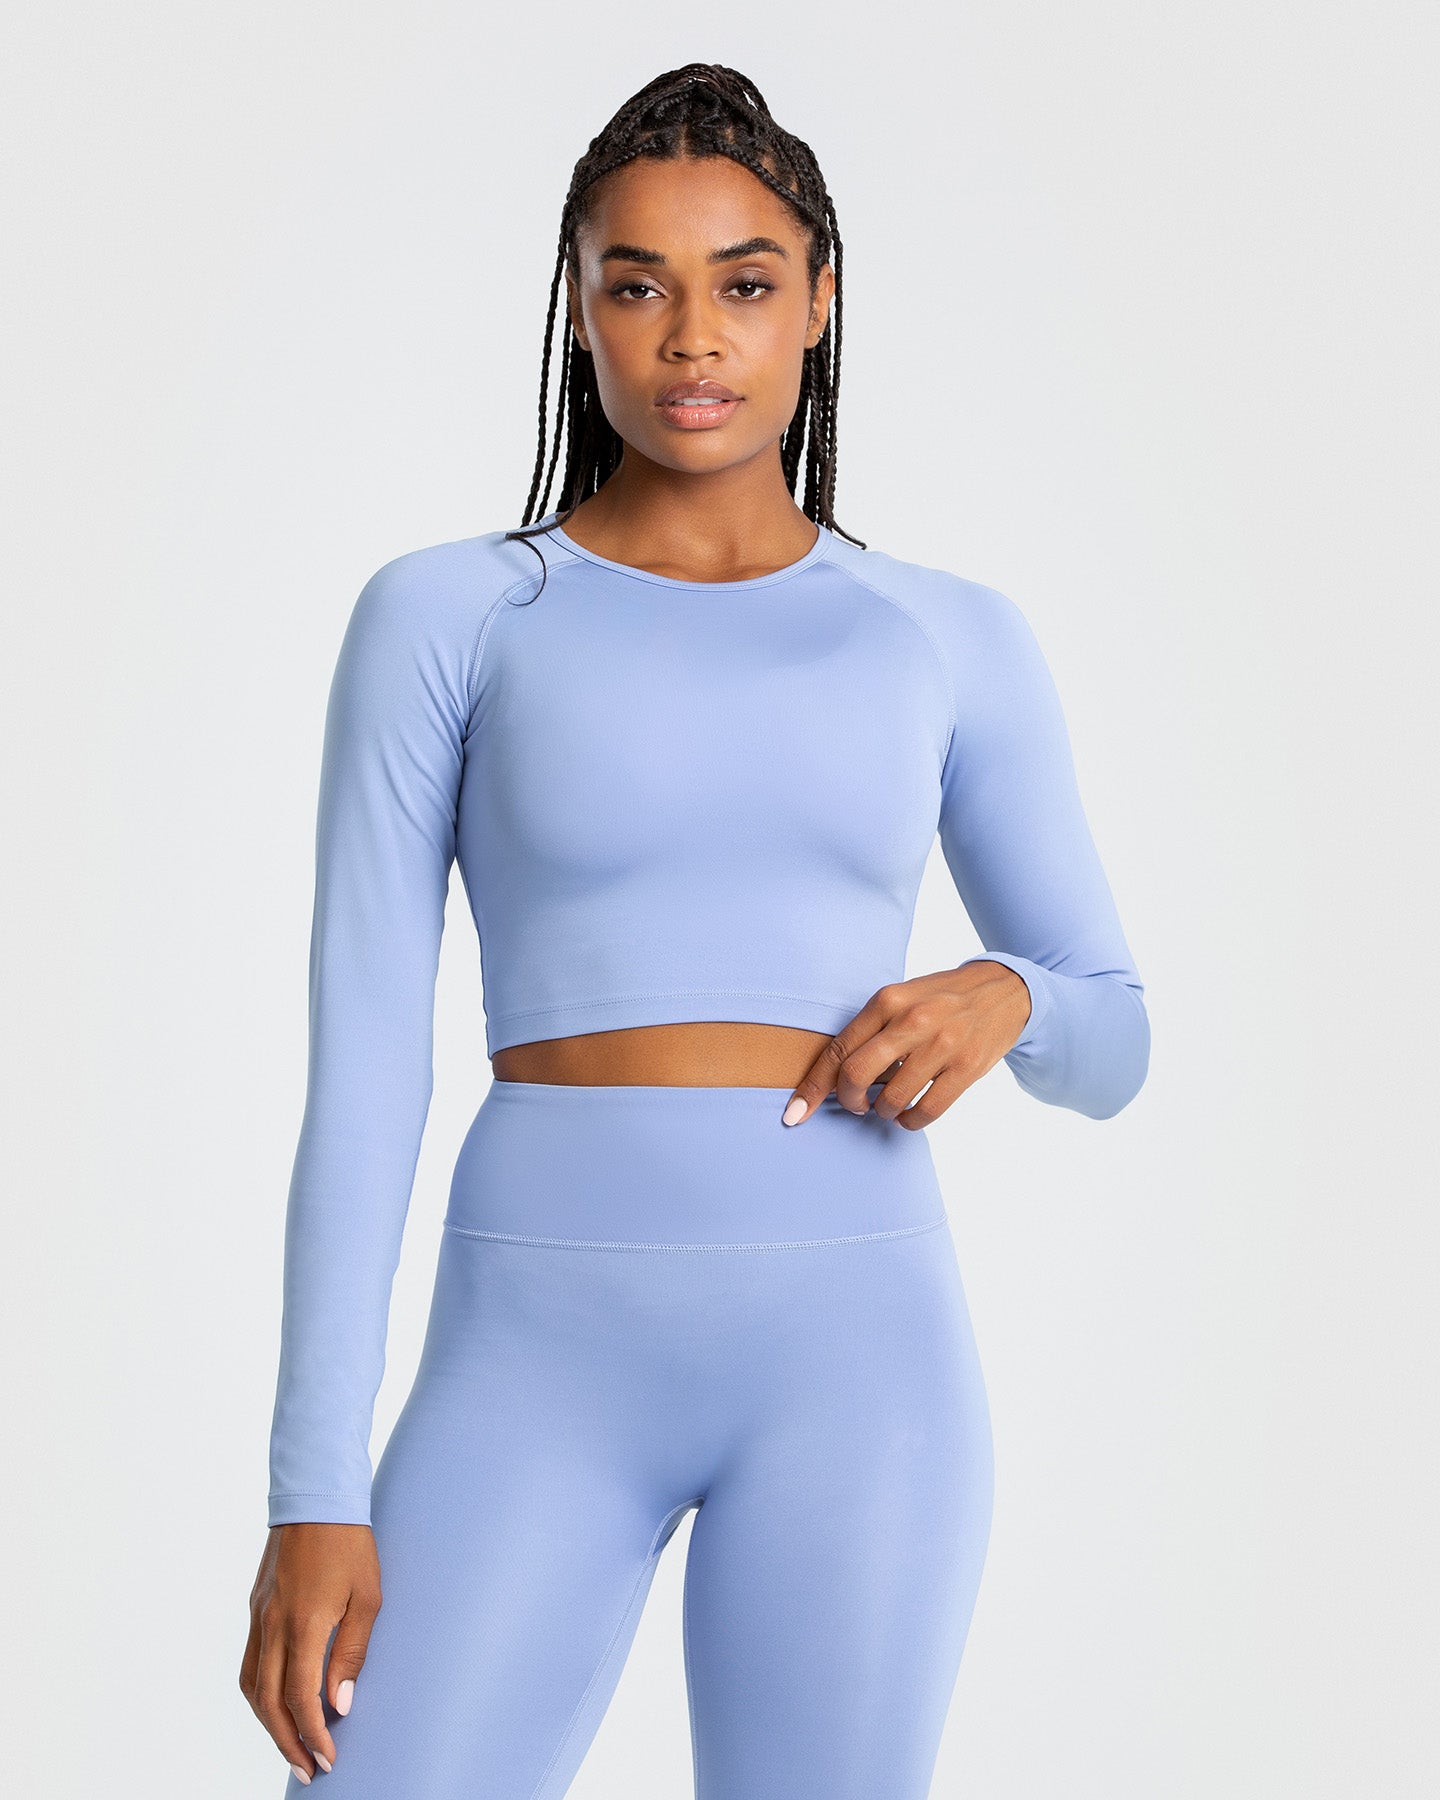 Blue Long Sleeve Top - Cropped | Women's Best